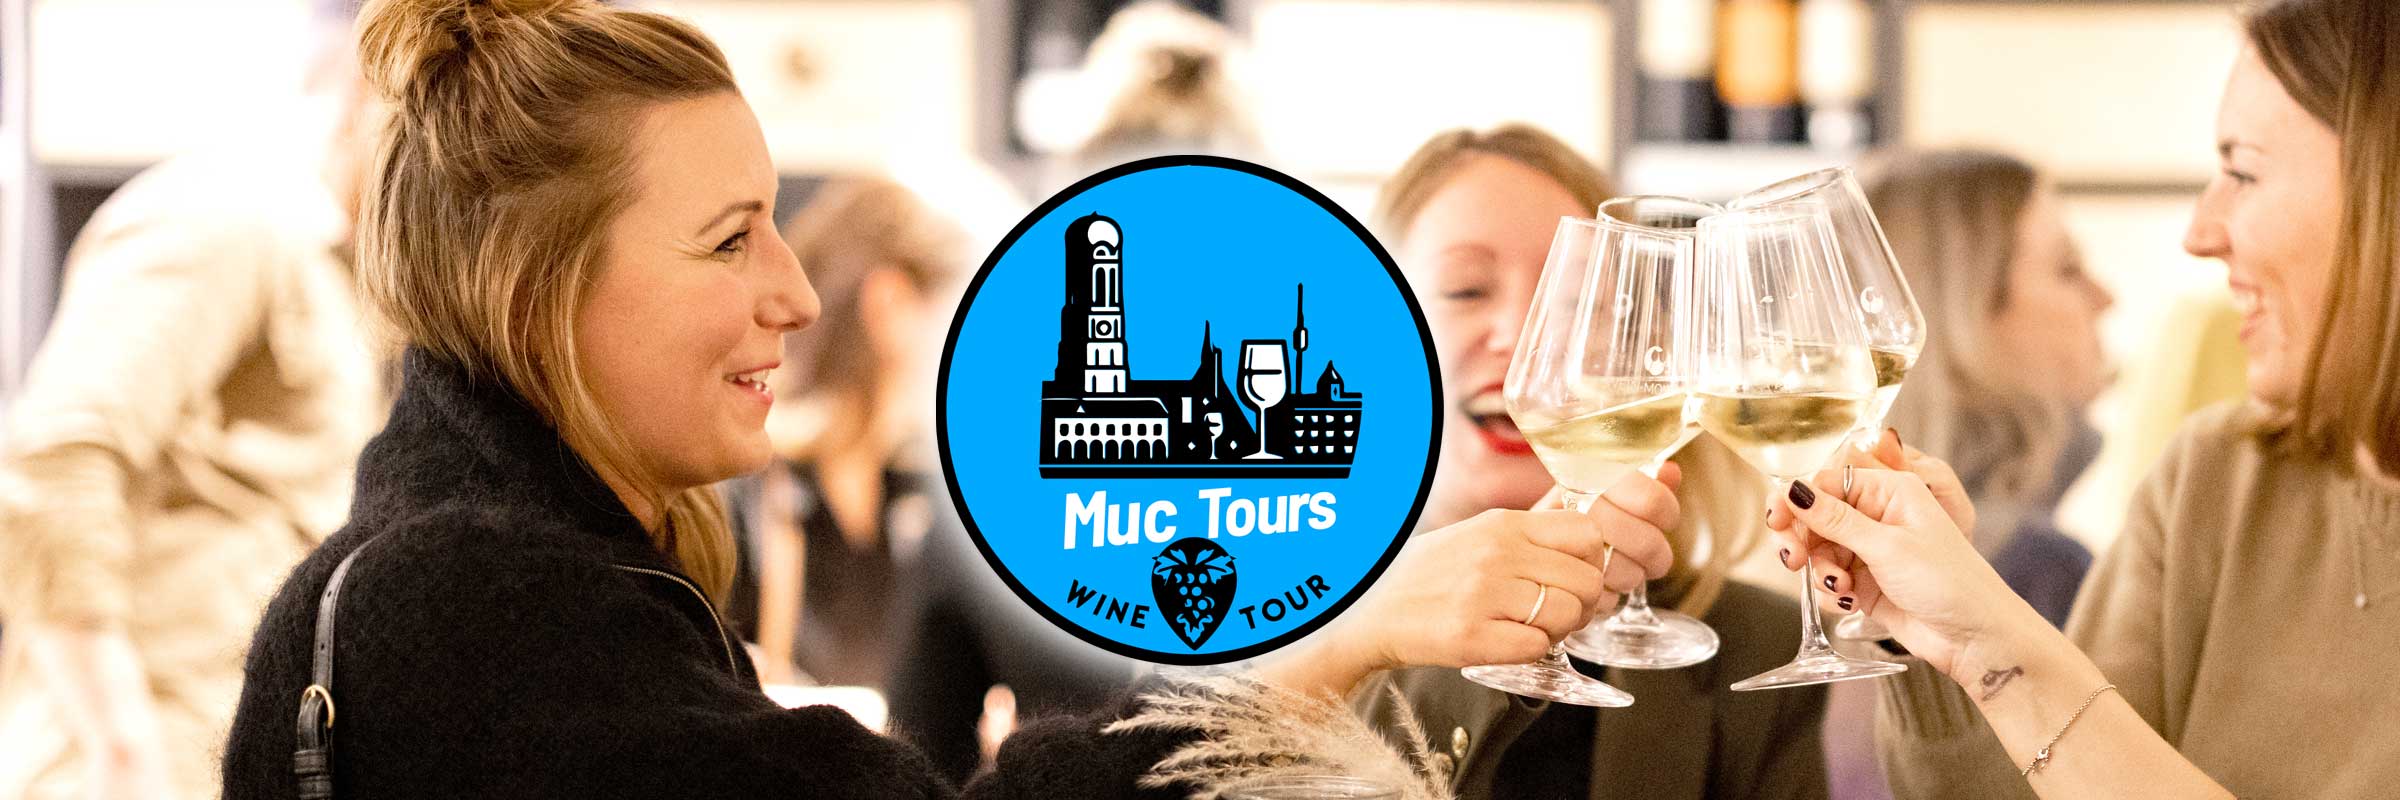 muctours hat jetzt eine wine-tour